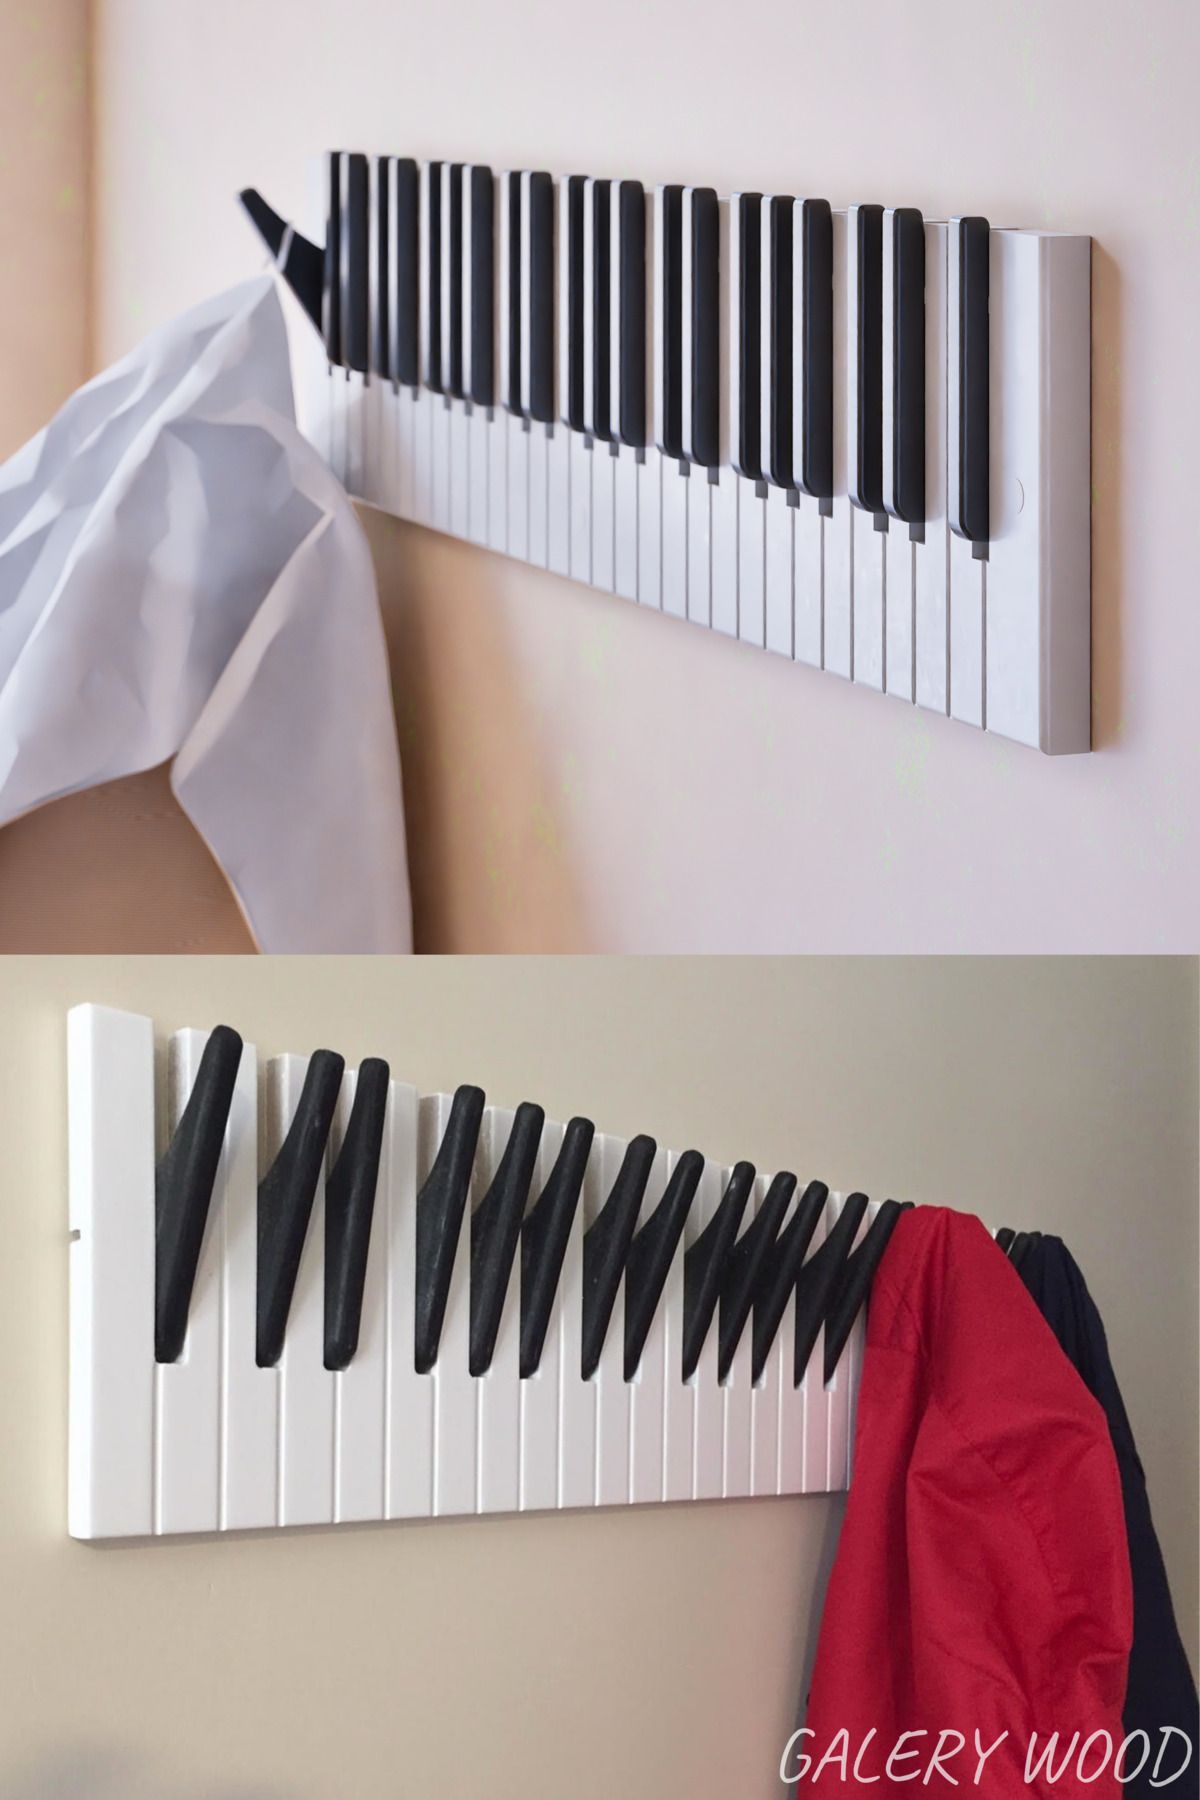 Galery Wood Dekoratif Ahşap 21tuşlu Piyano Elbise Askılık Enstrümantal Çok Amaçlı Çanta Kapı Piano Askı;15x75cm